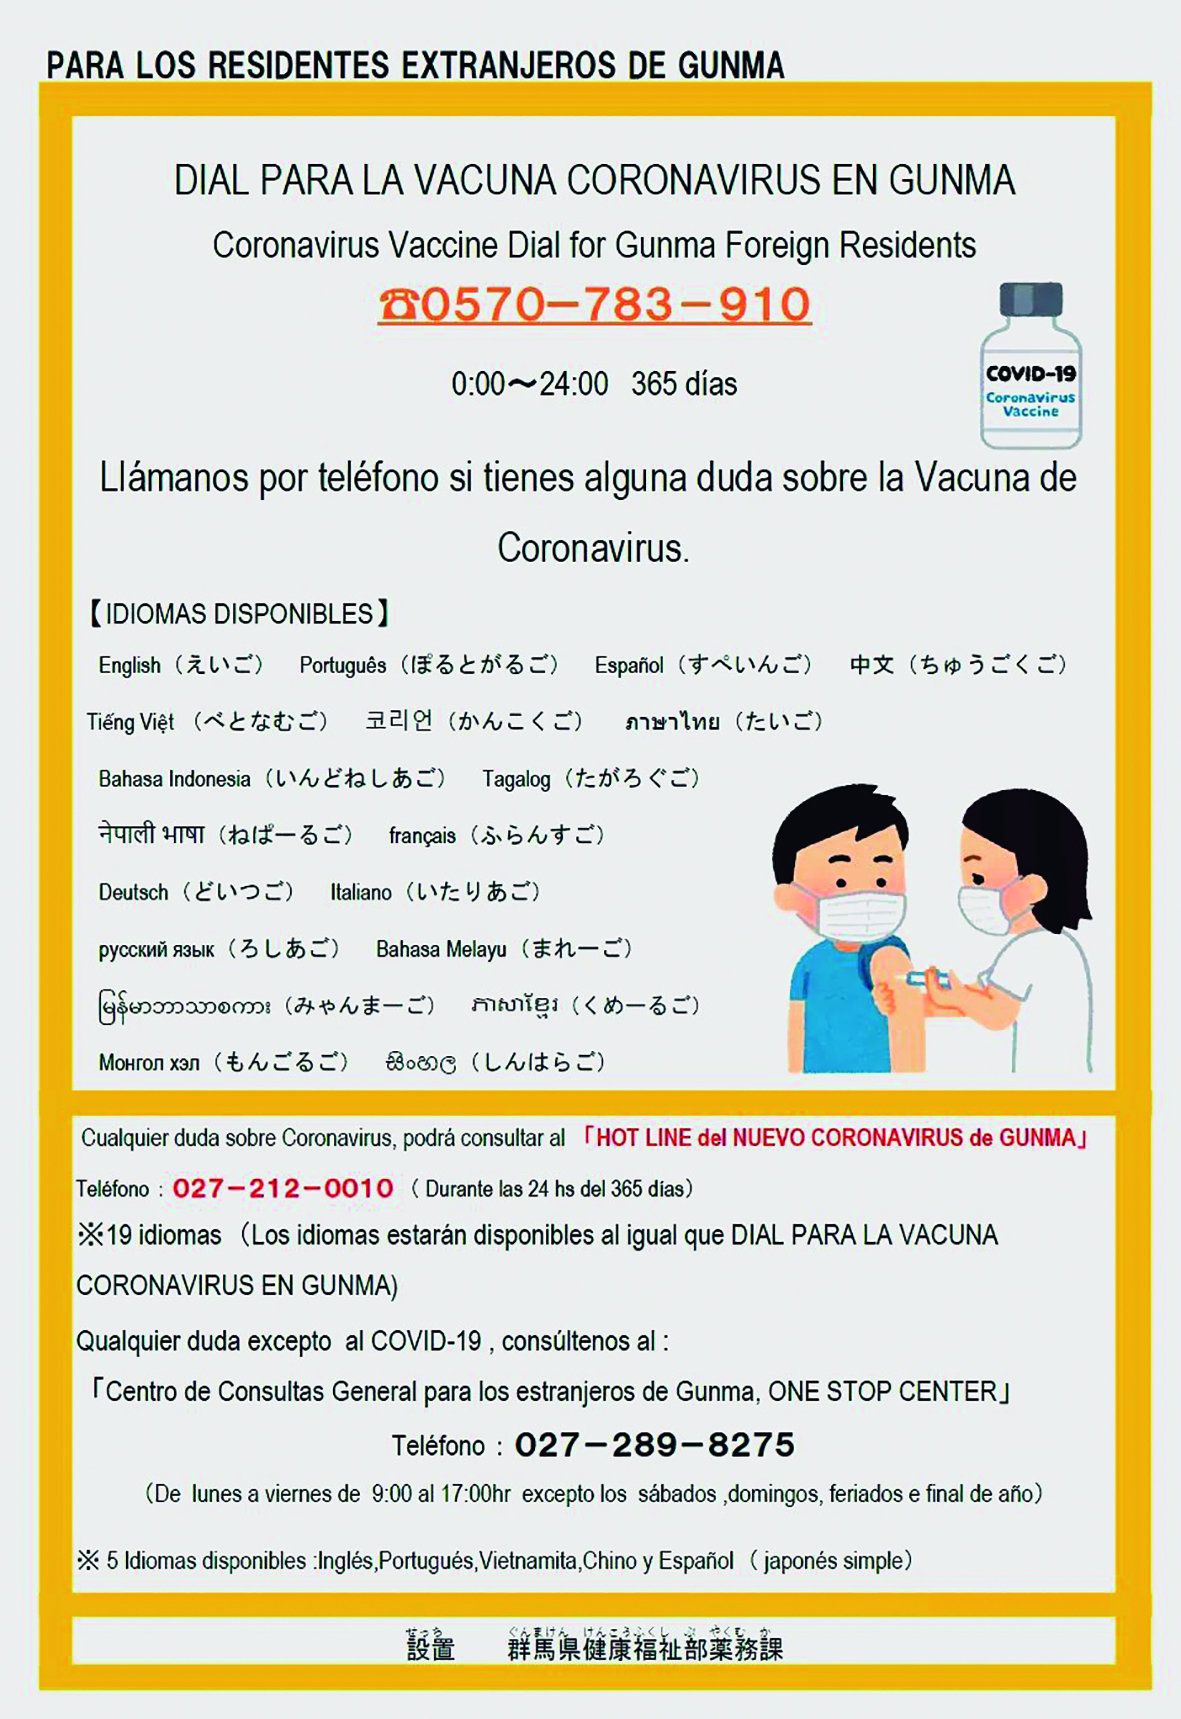 En Gunma han habilitado un número de teléfono que resuelve inquietudes sobre las vacunas en hasta 20 idiomas.